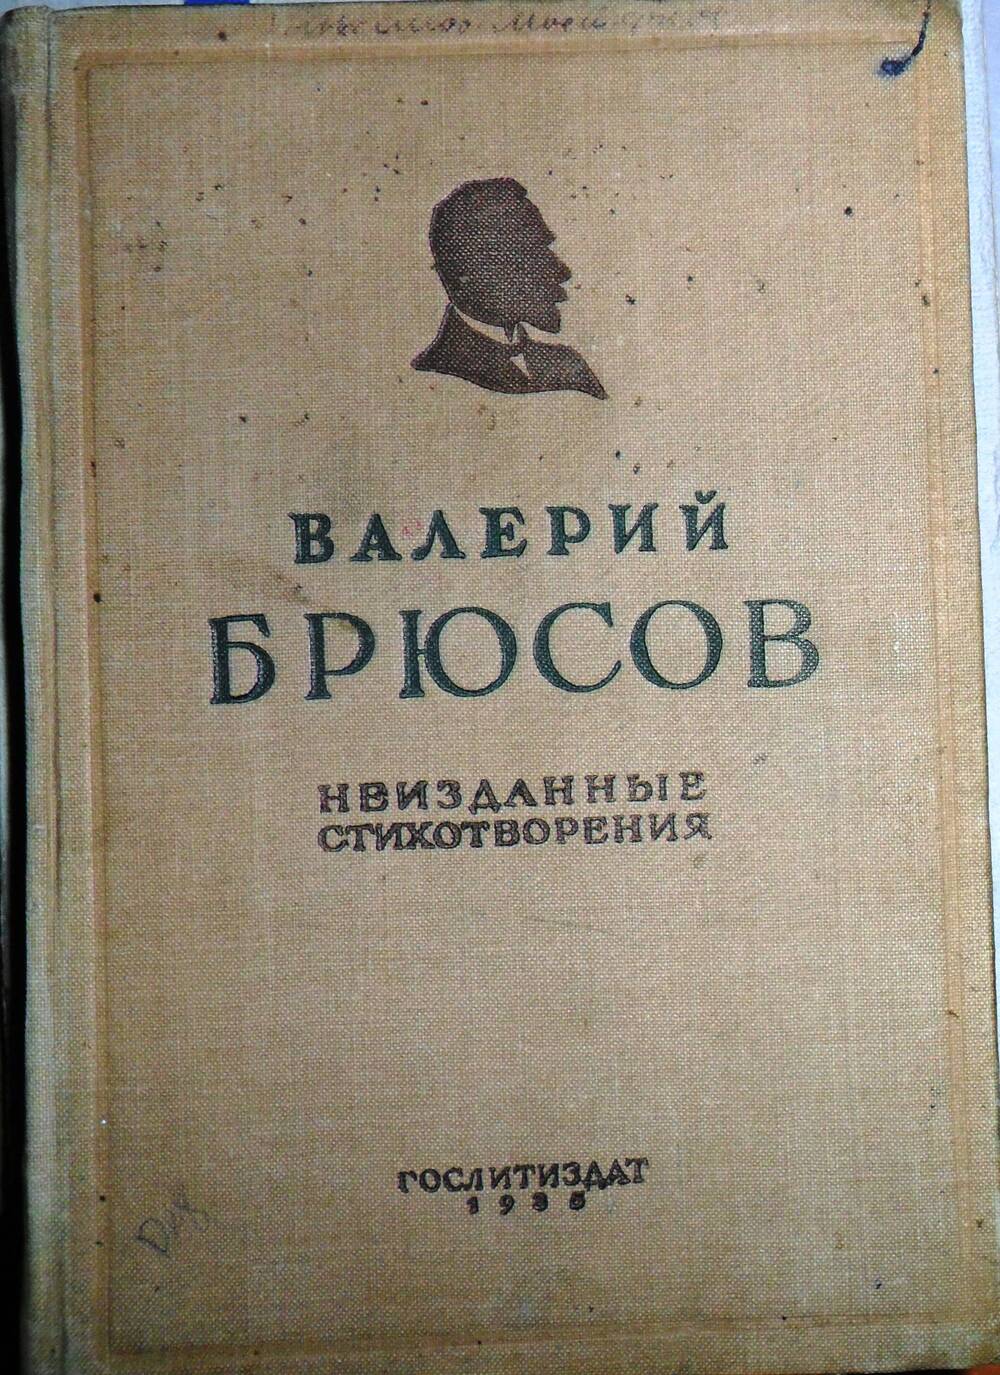 Книга Неизданные стихотворения Варий Брюсов с автографом. г. Москва, 1935 г